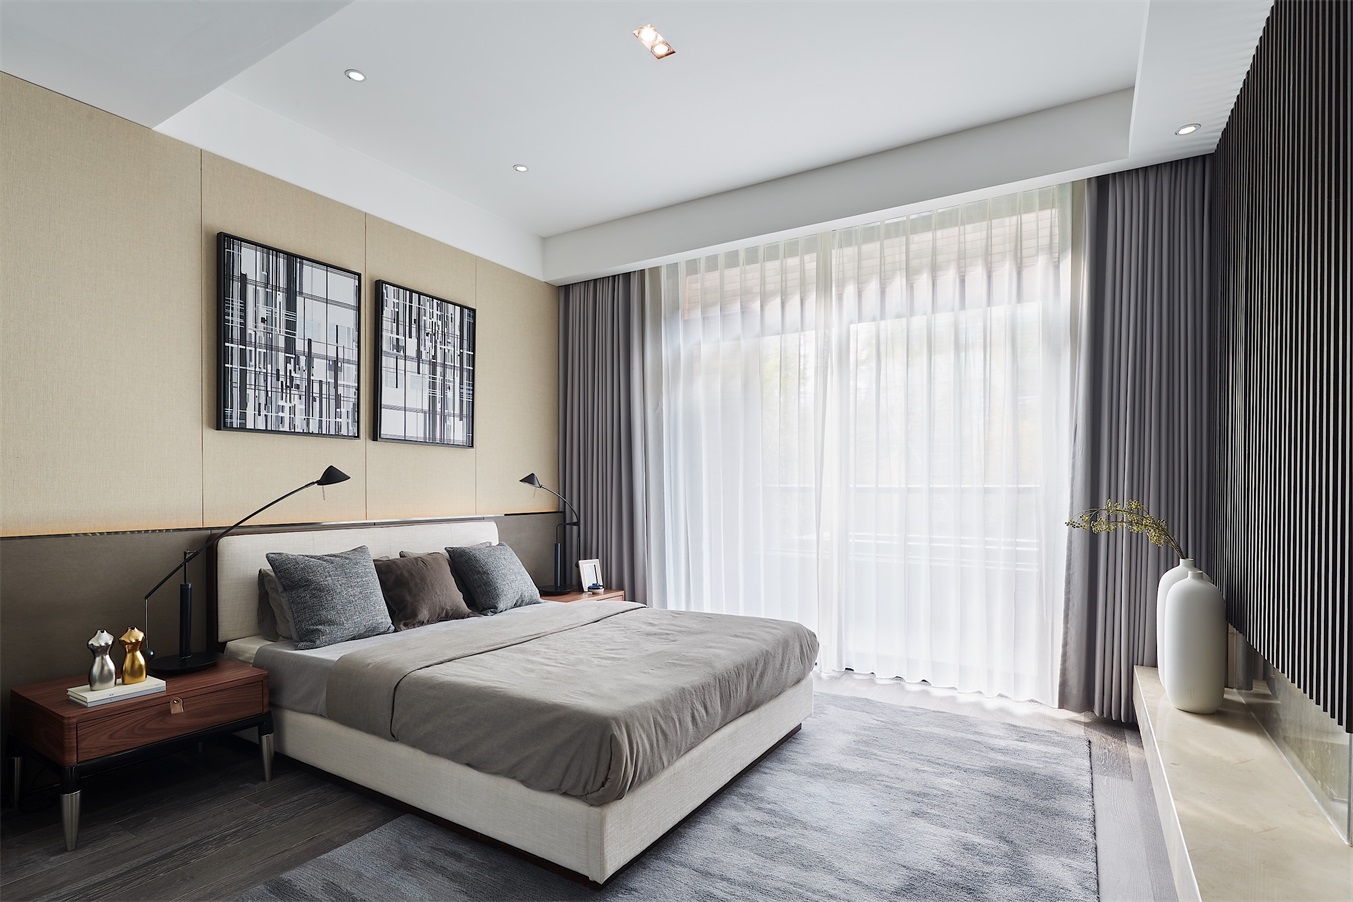 米色作为主卧空间的背景，配以灰色窗帘和冷色床品，诠释出业主举重若轻的生活态度。